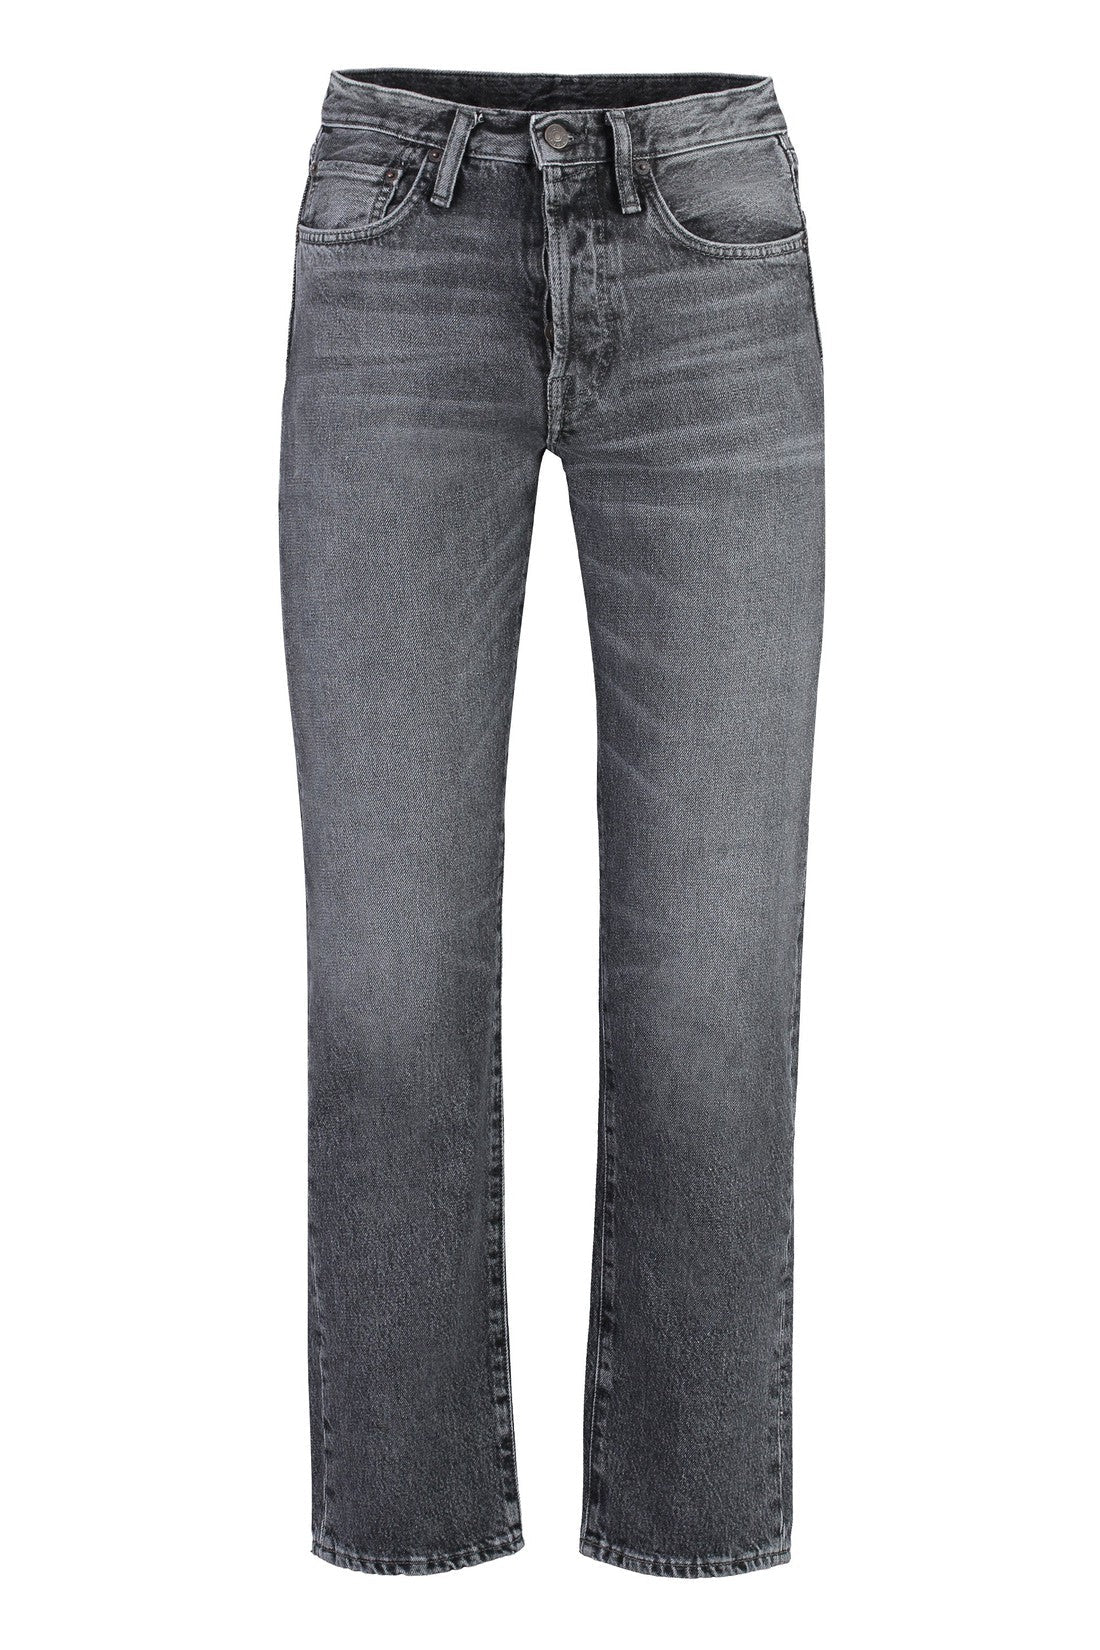 Acne Studios-OUTLET-SALE-5-pocket straight-leg jeans-ARCHIVIST